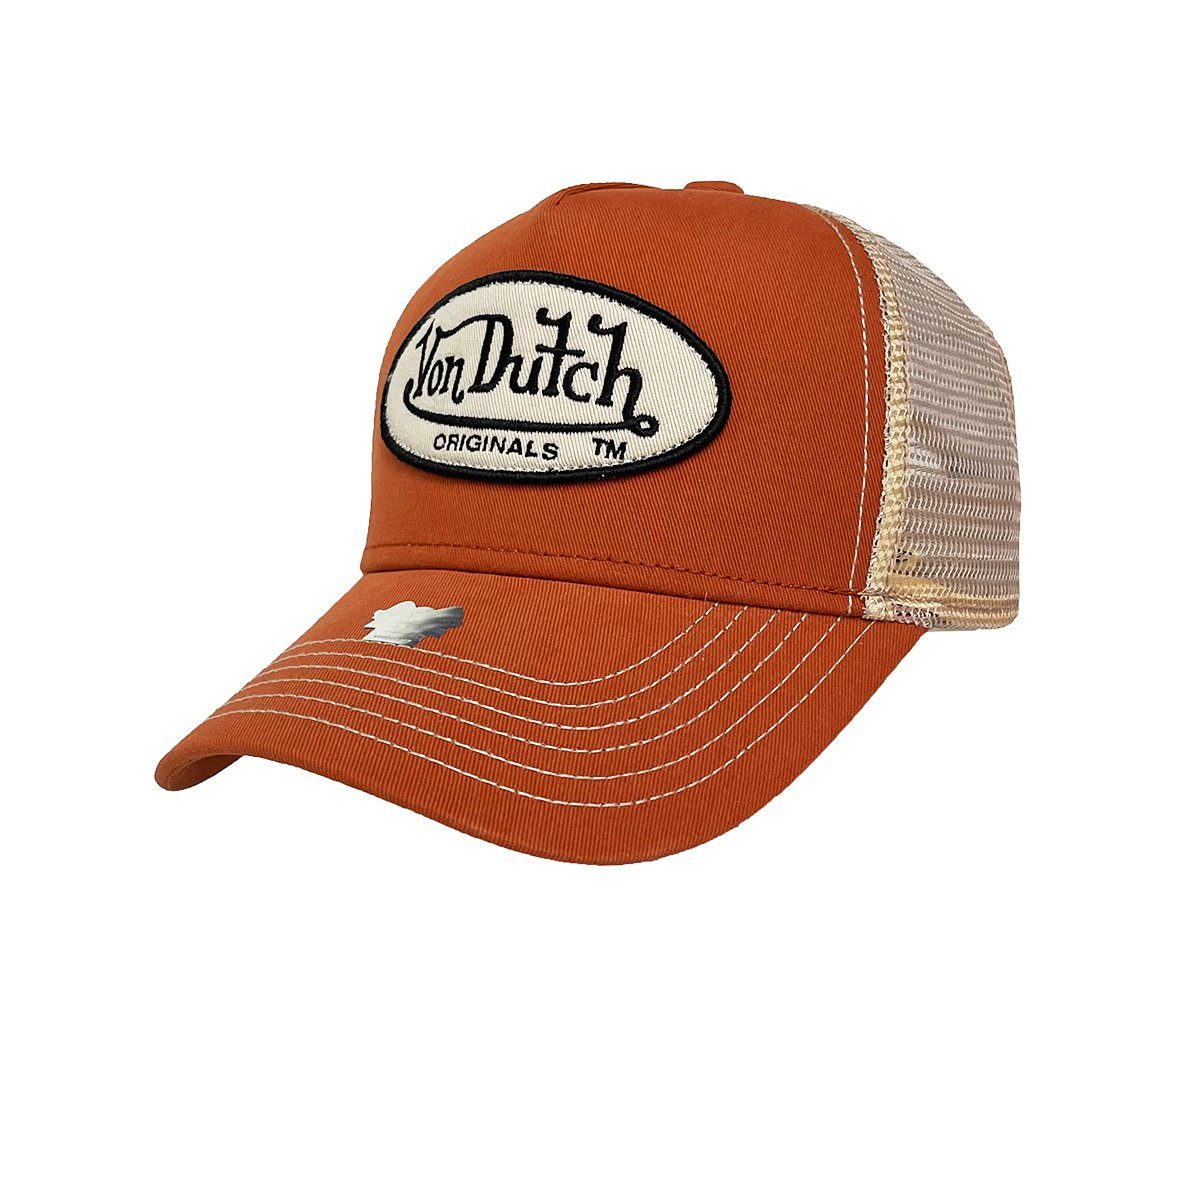 Orange Trucker Caps für Herren online kaufen | OTTO